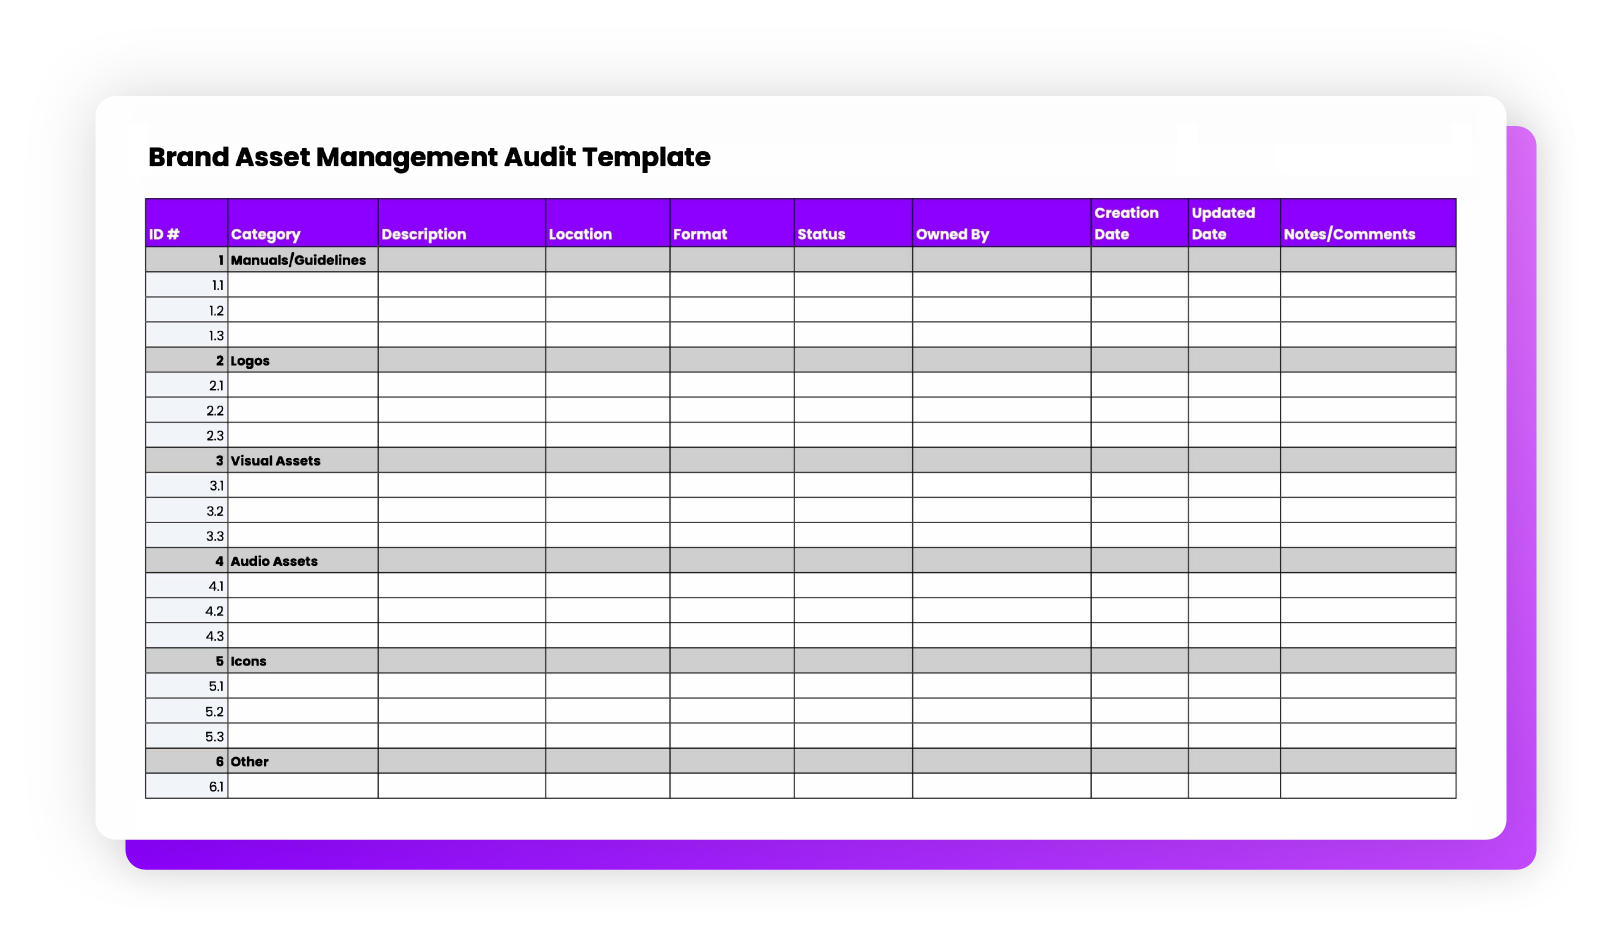 Brand asset management audit template mockup